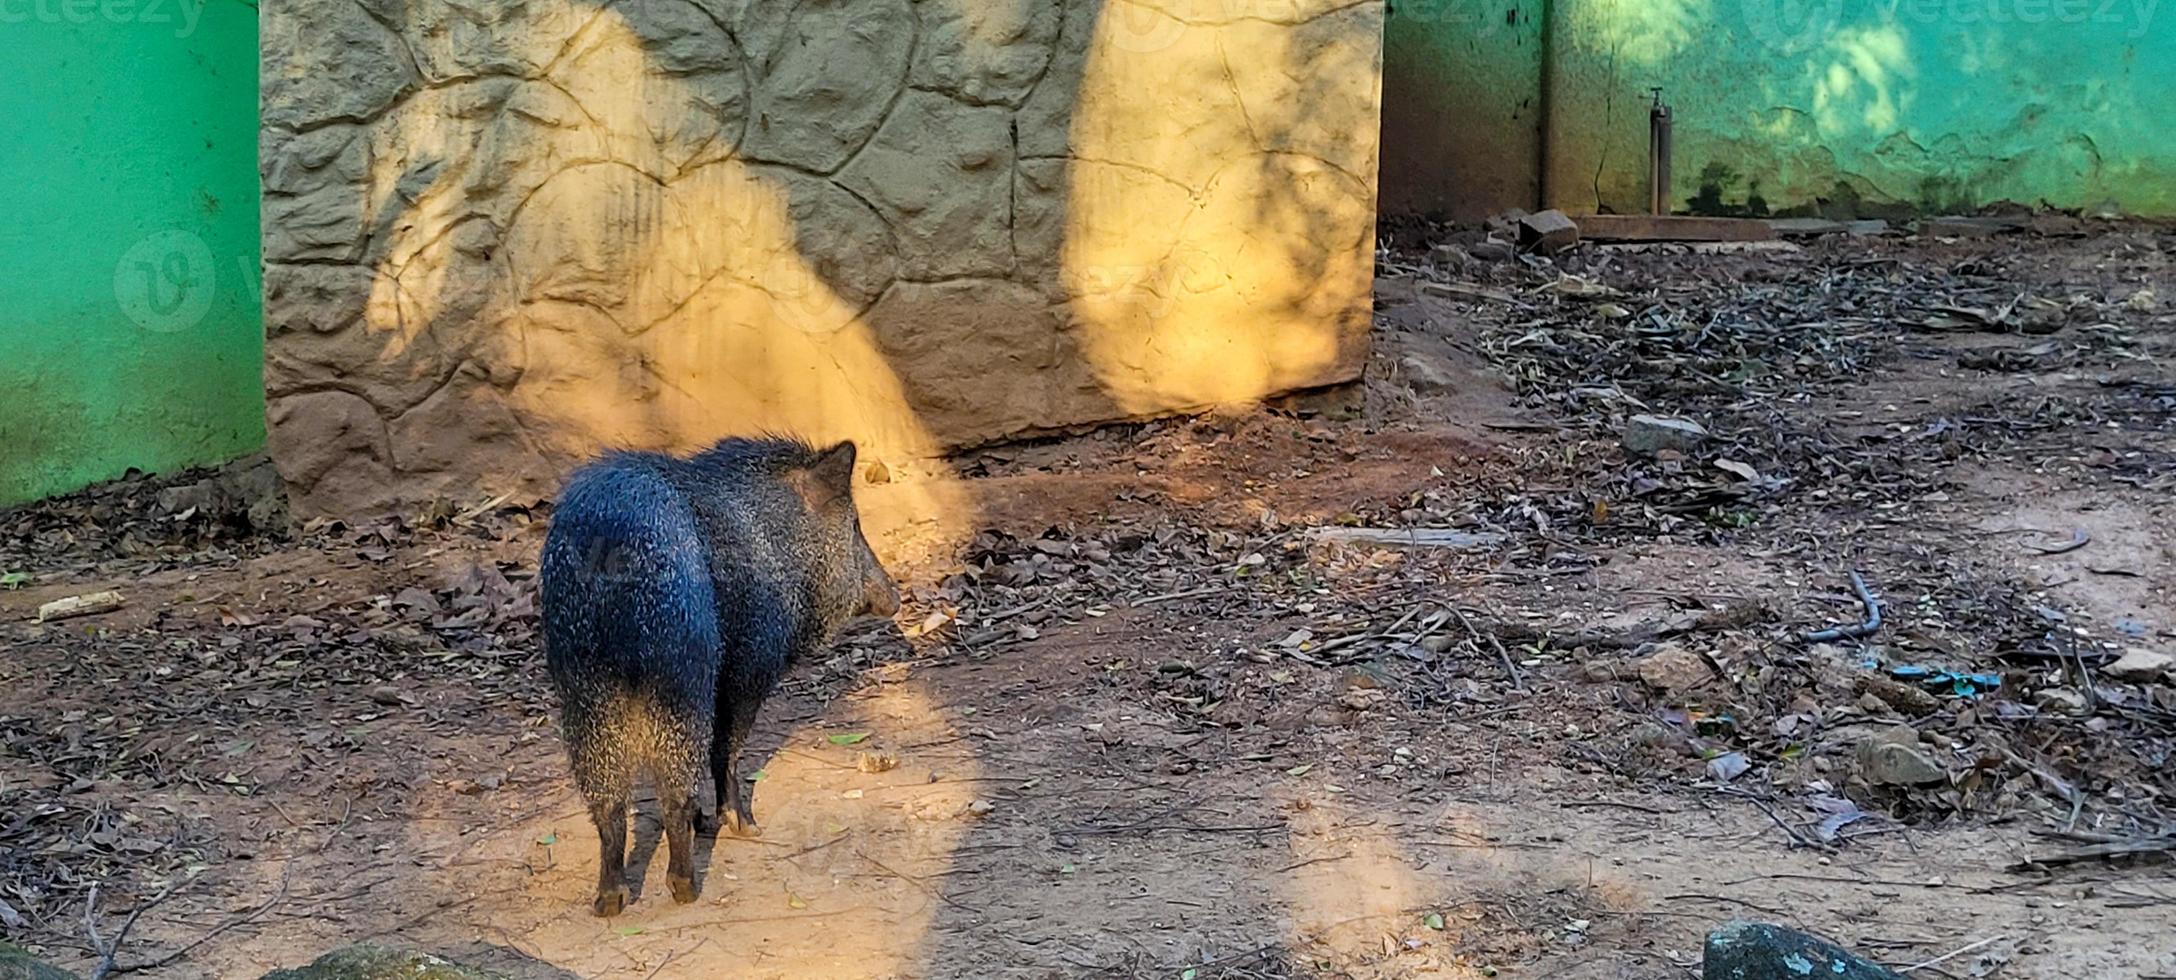 porco selvagem brasileiro conhecido como queixada foto